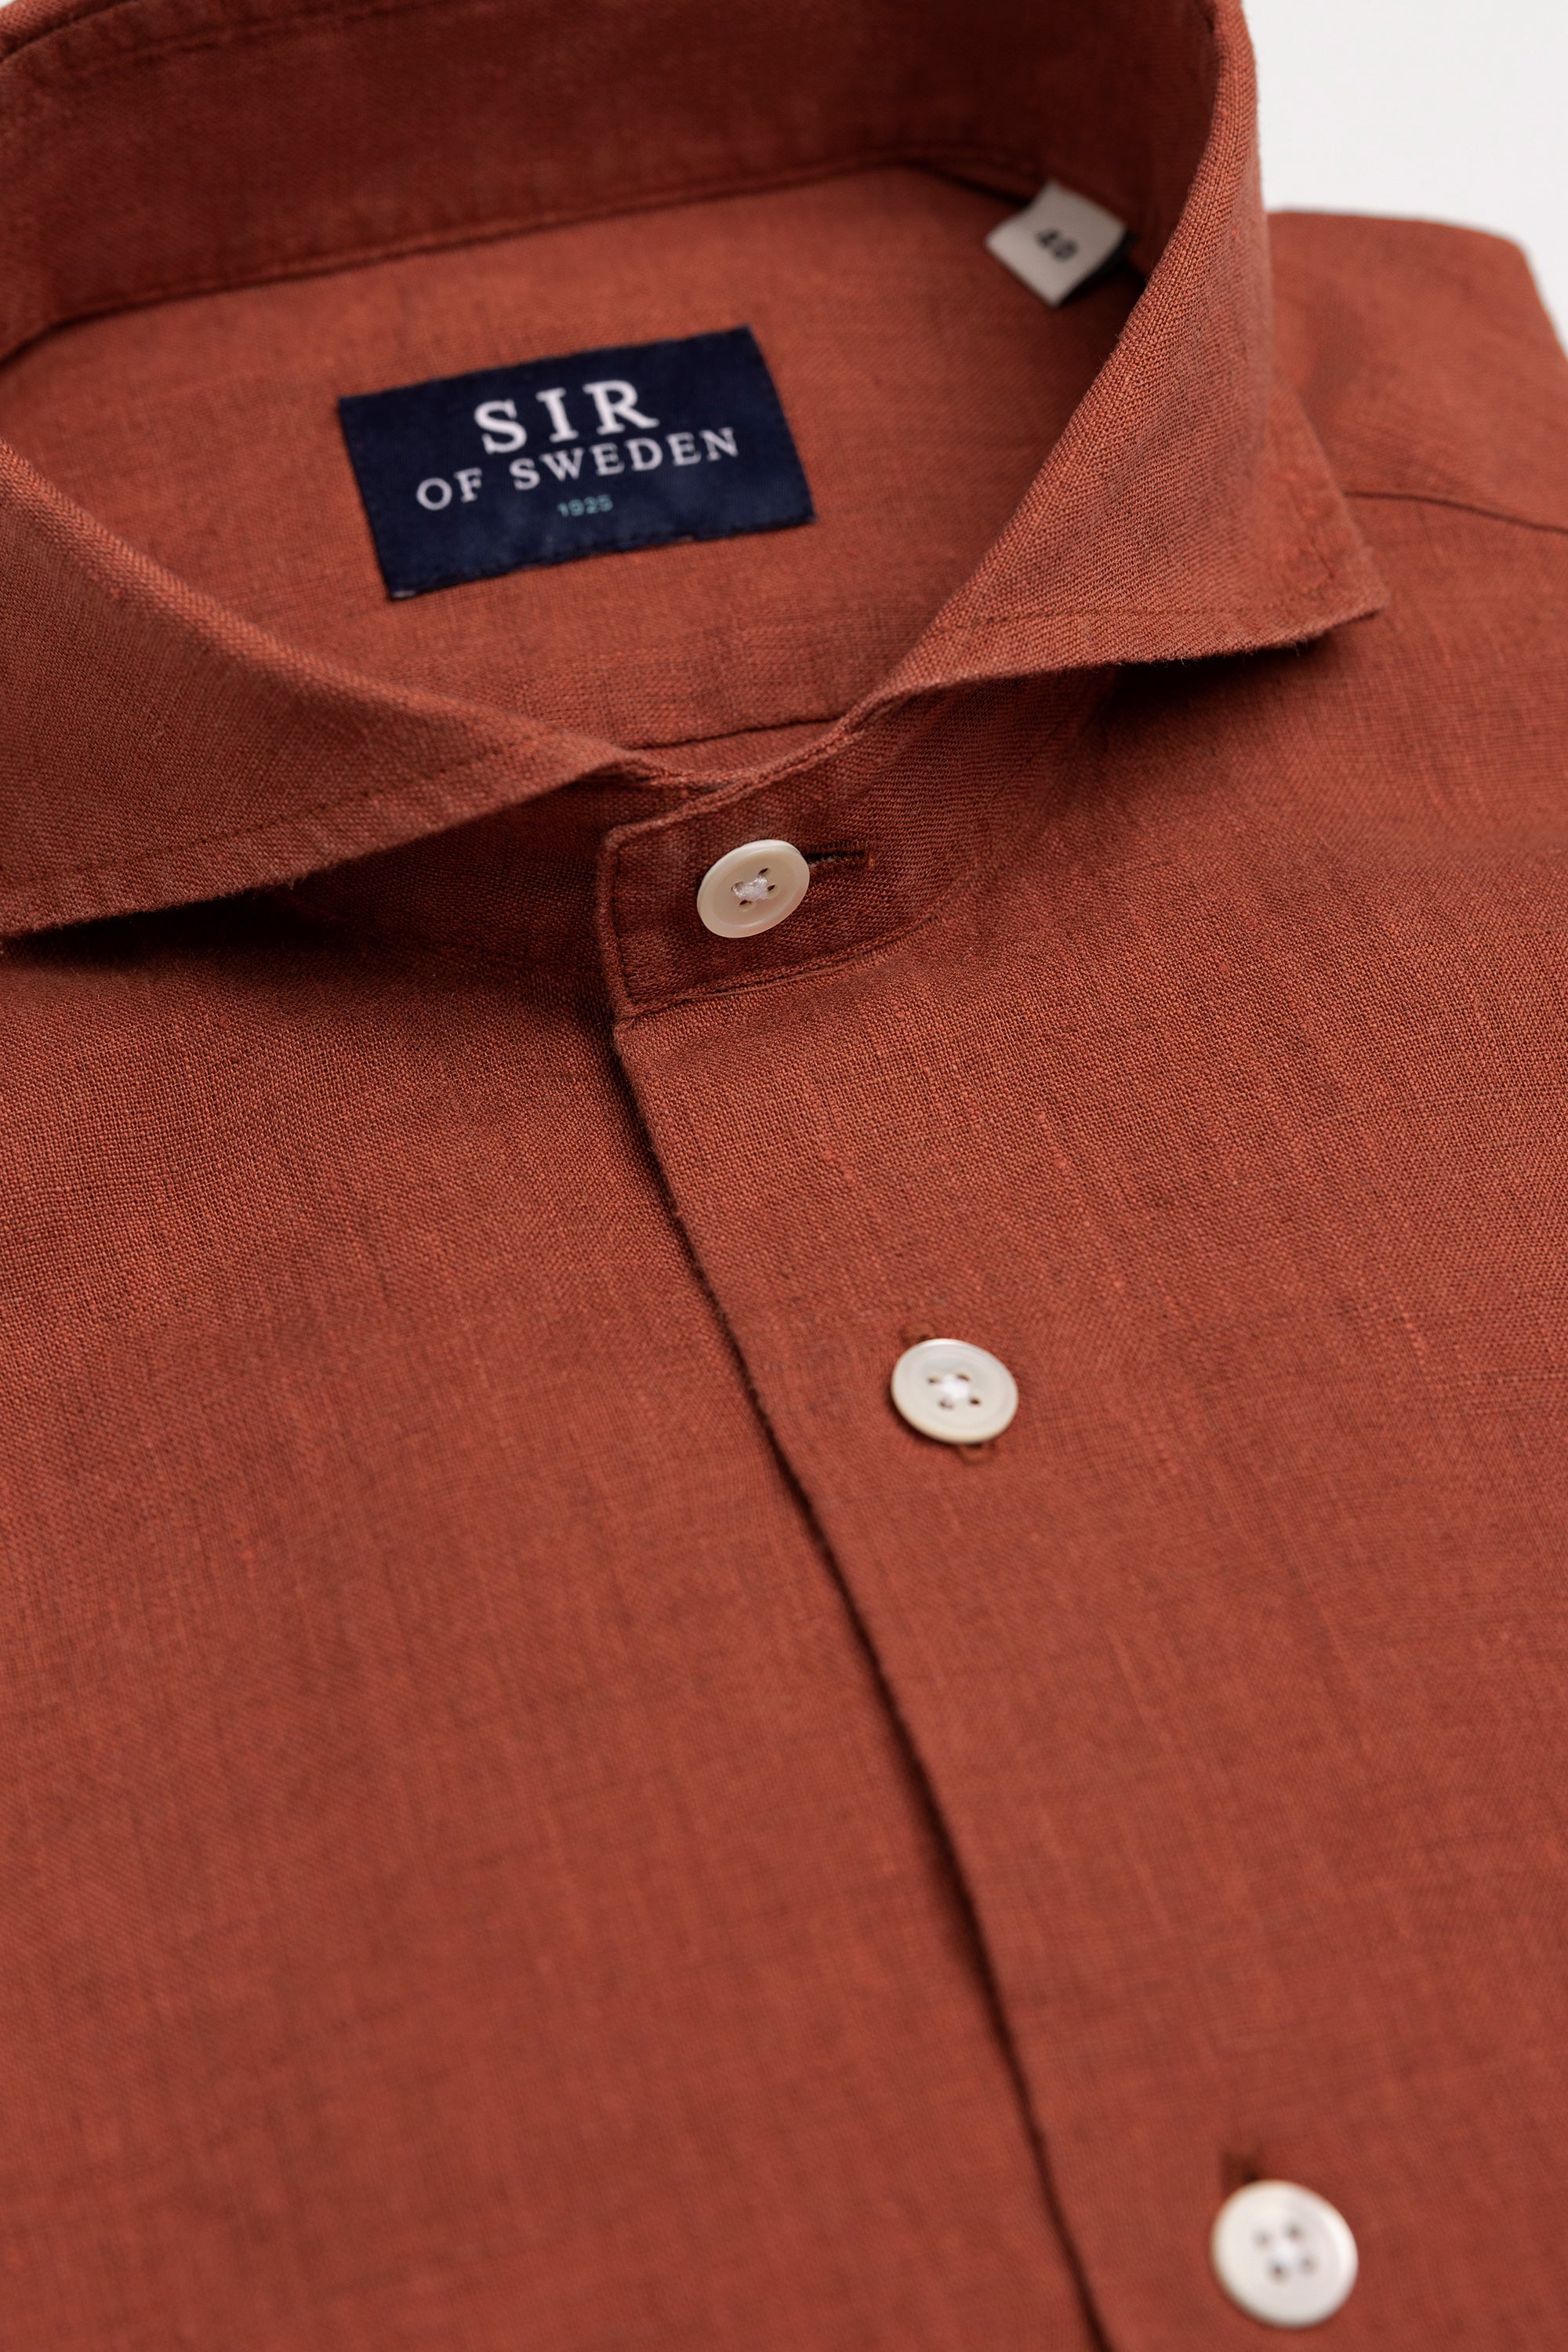 Agnelli Rust Linen Shirt